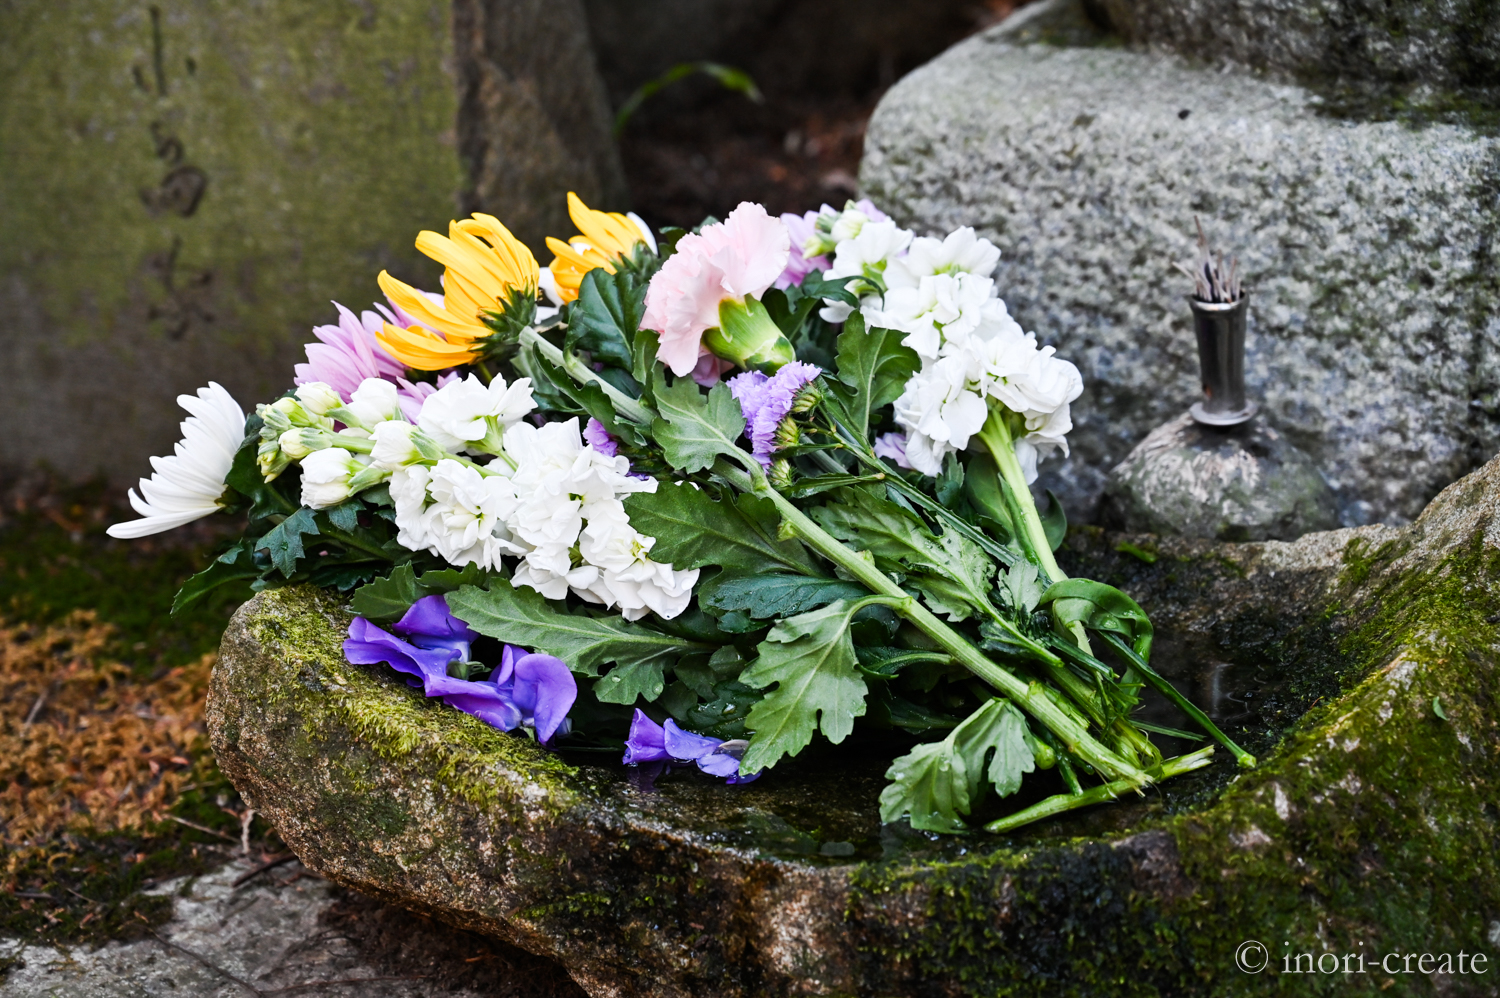 鎌倉東慶寺の小畠宏允氏の墓所。自然石の風合いが生かされた献花台は苔むしてきて、大地にお花を捧げるようなイメージを感じらせる。